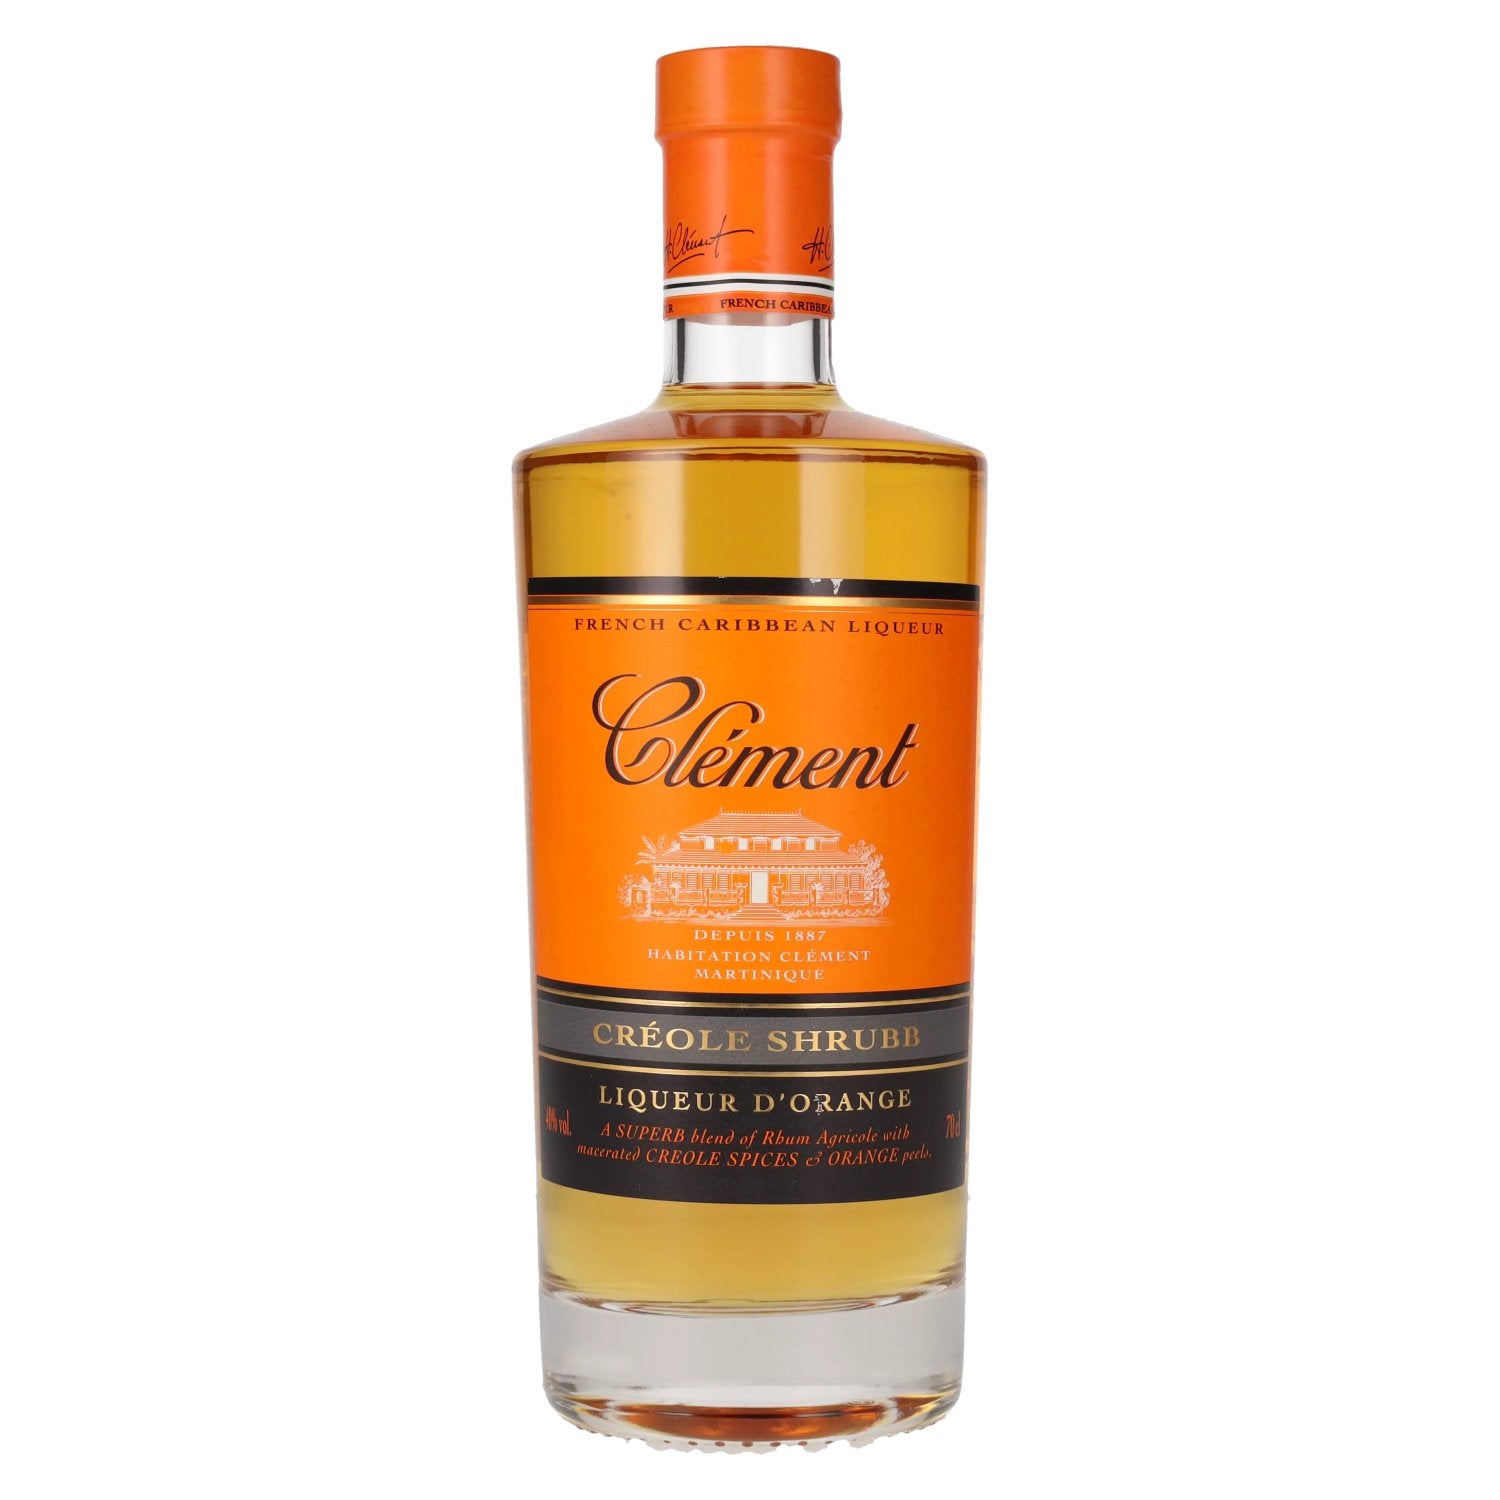 Clement Creole Shrubb Liqueur D'Orange 40% Vol. 0,7l